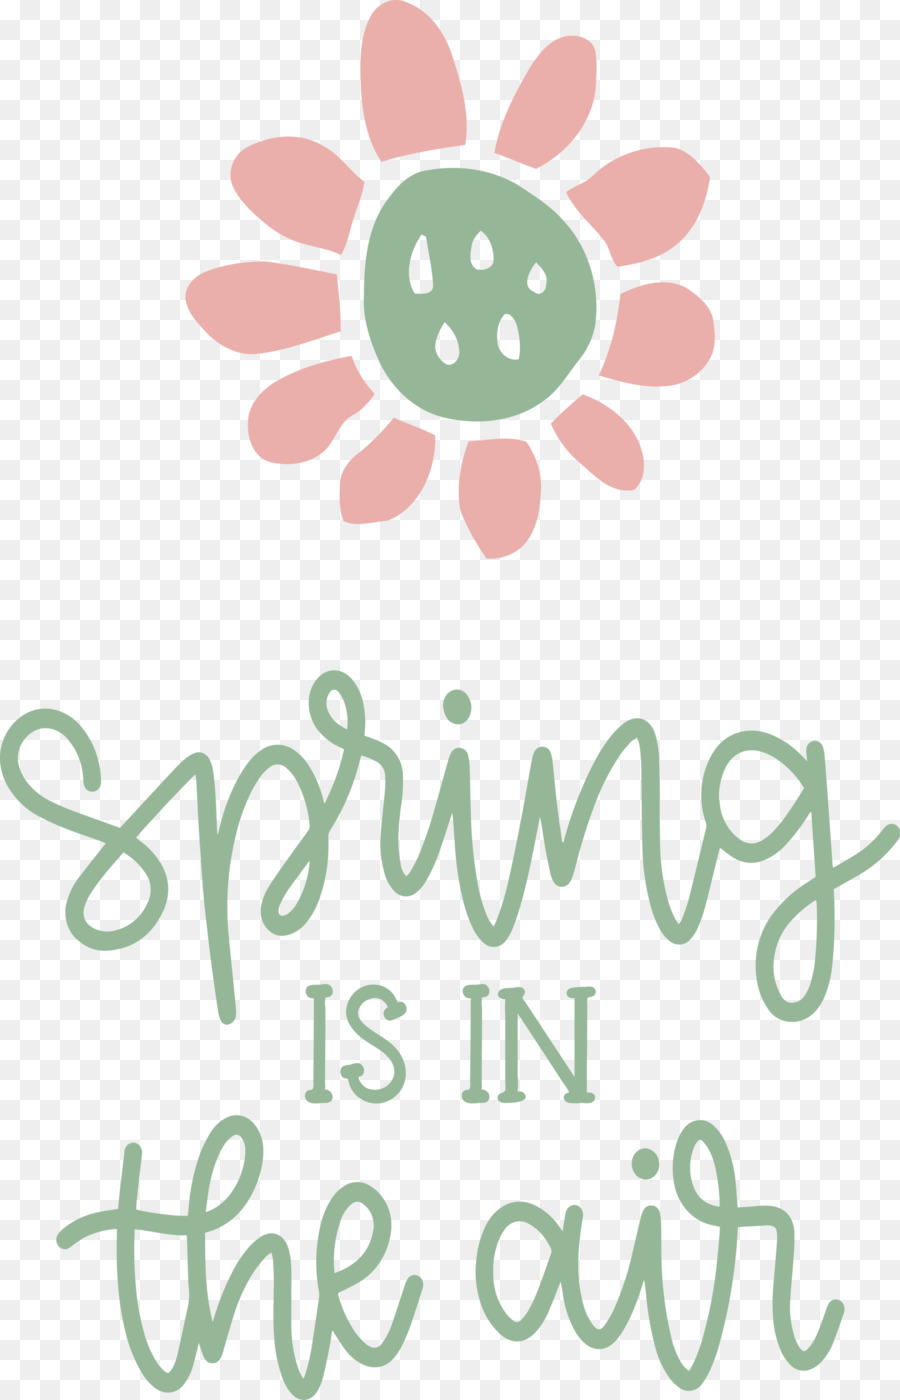 Mùa xuân đang ở trong không khí mùa xuân - 